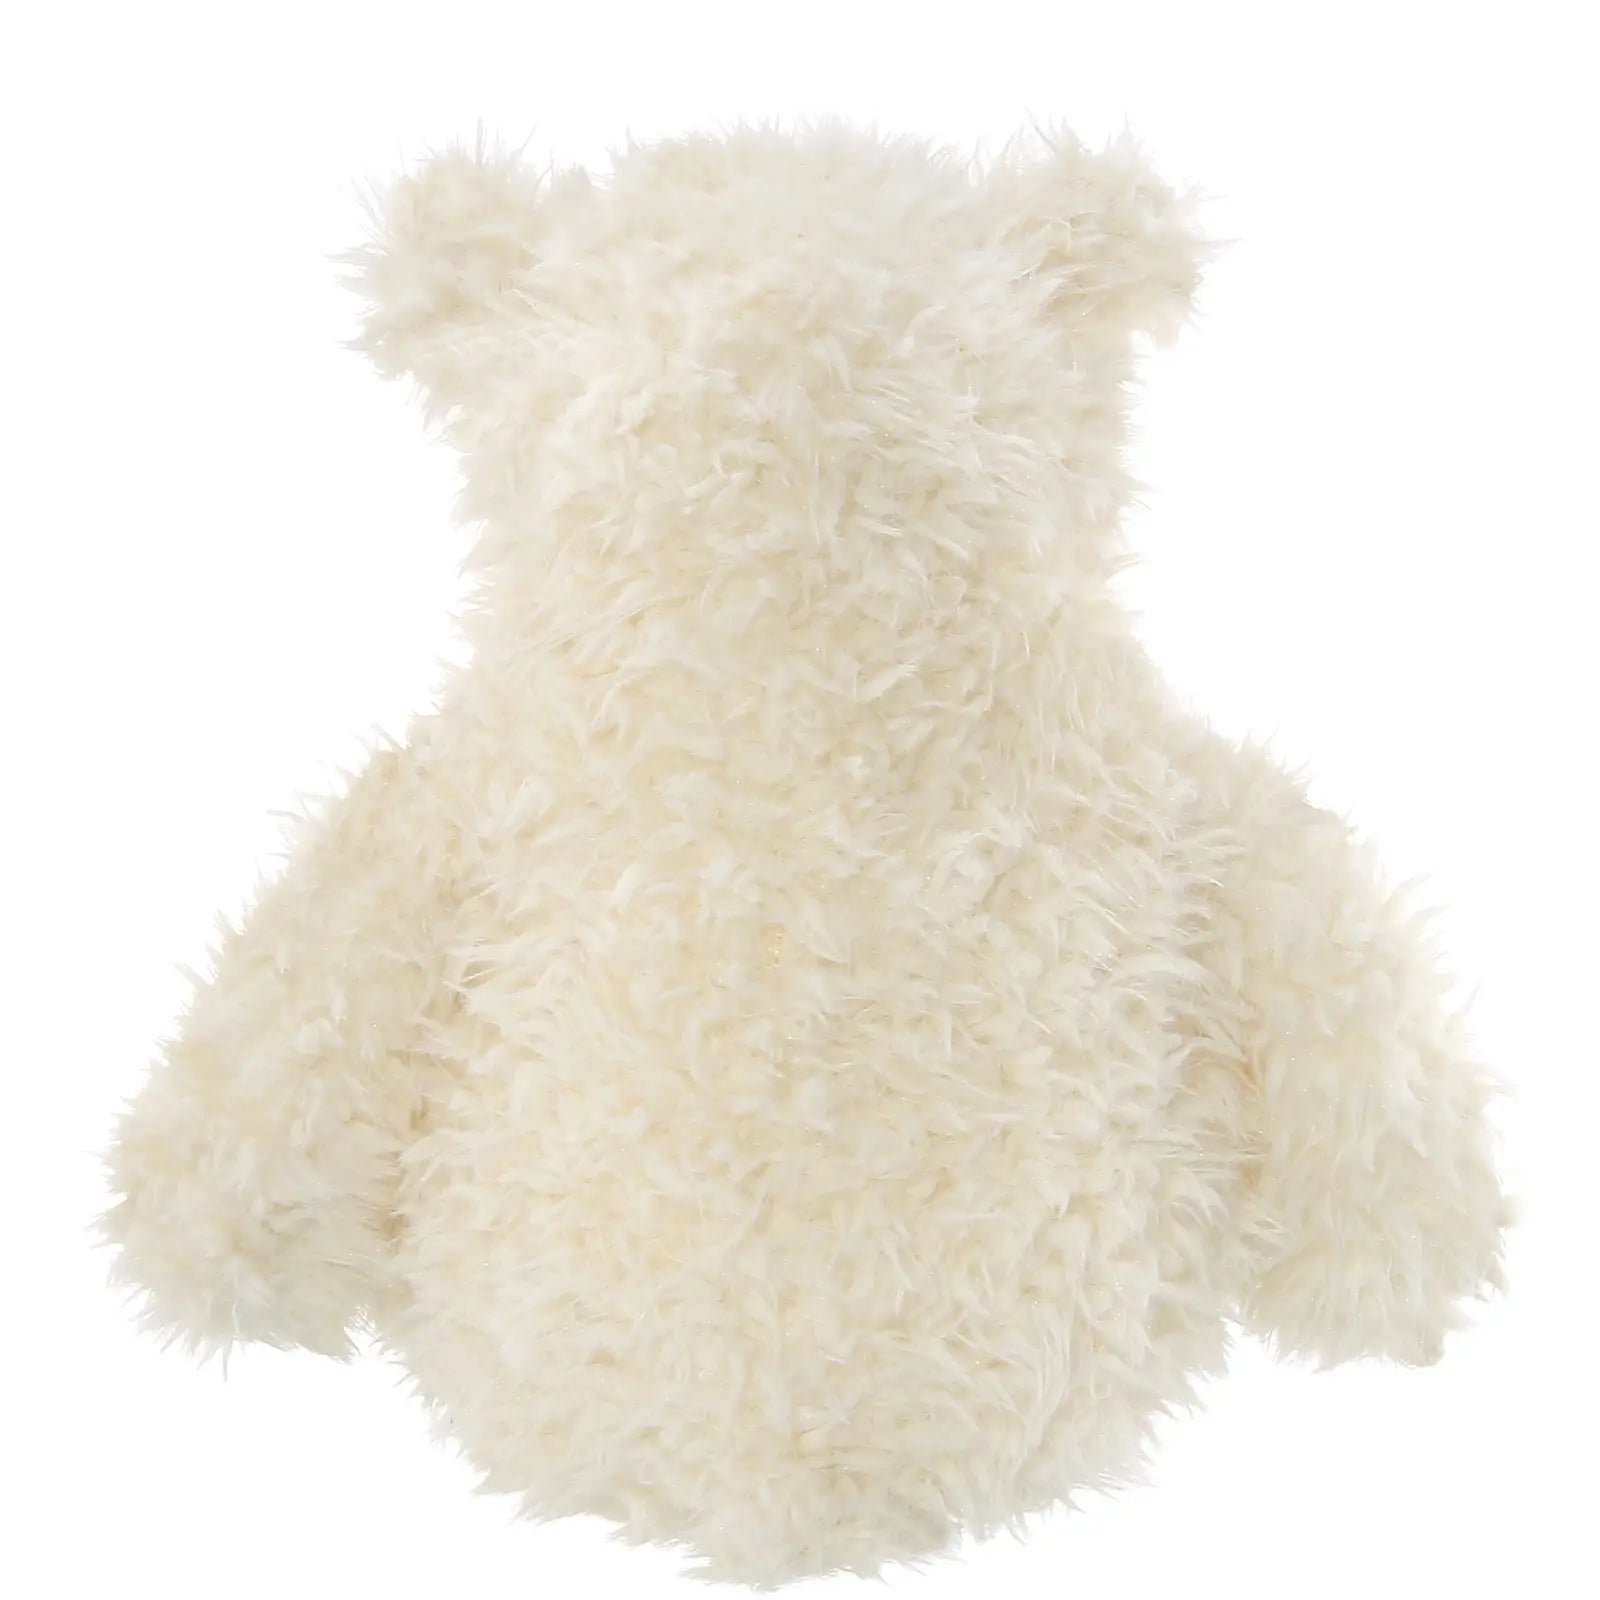 Bearington - Scruffy the Teddy Bear